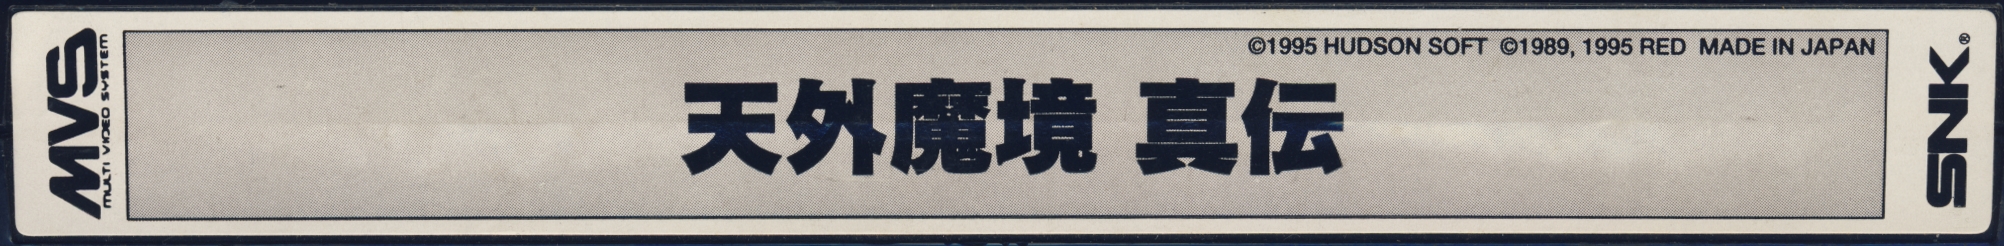 Kabuki klash jp label.jpg